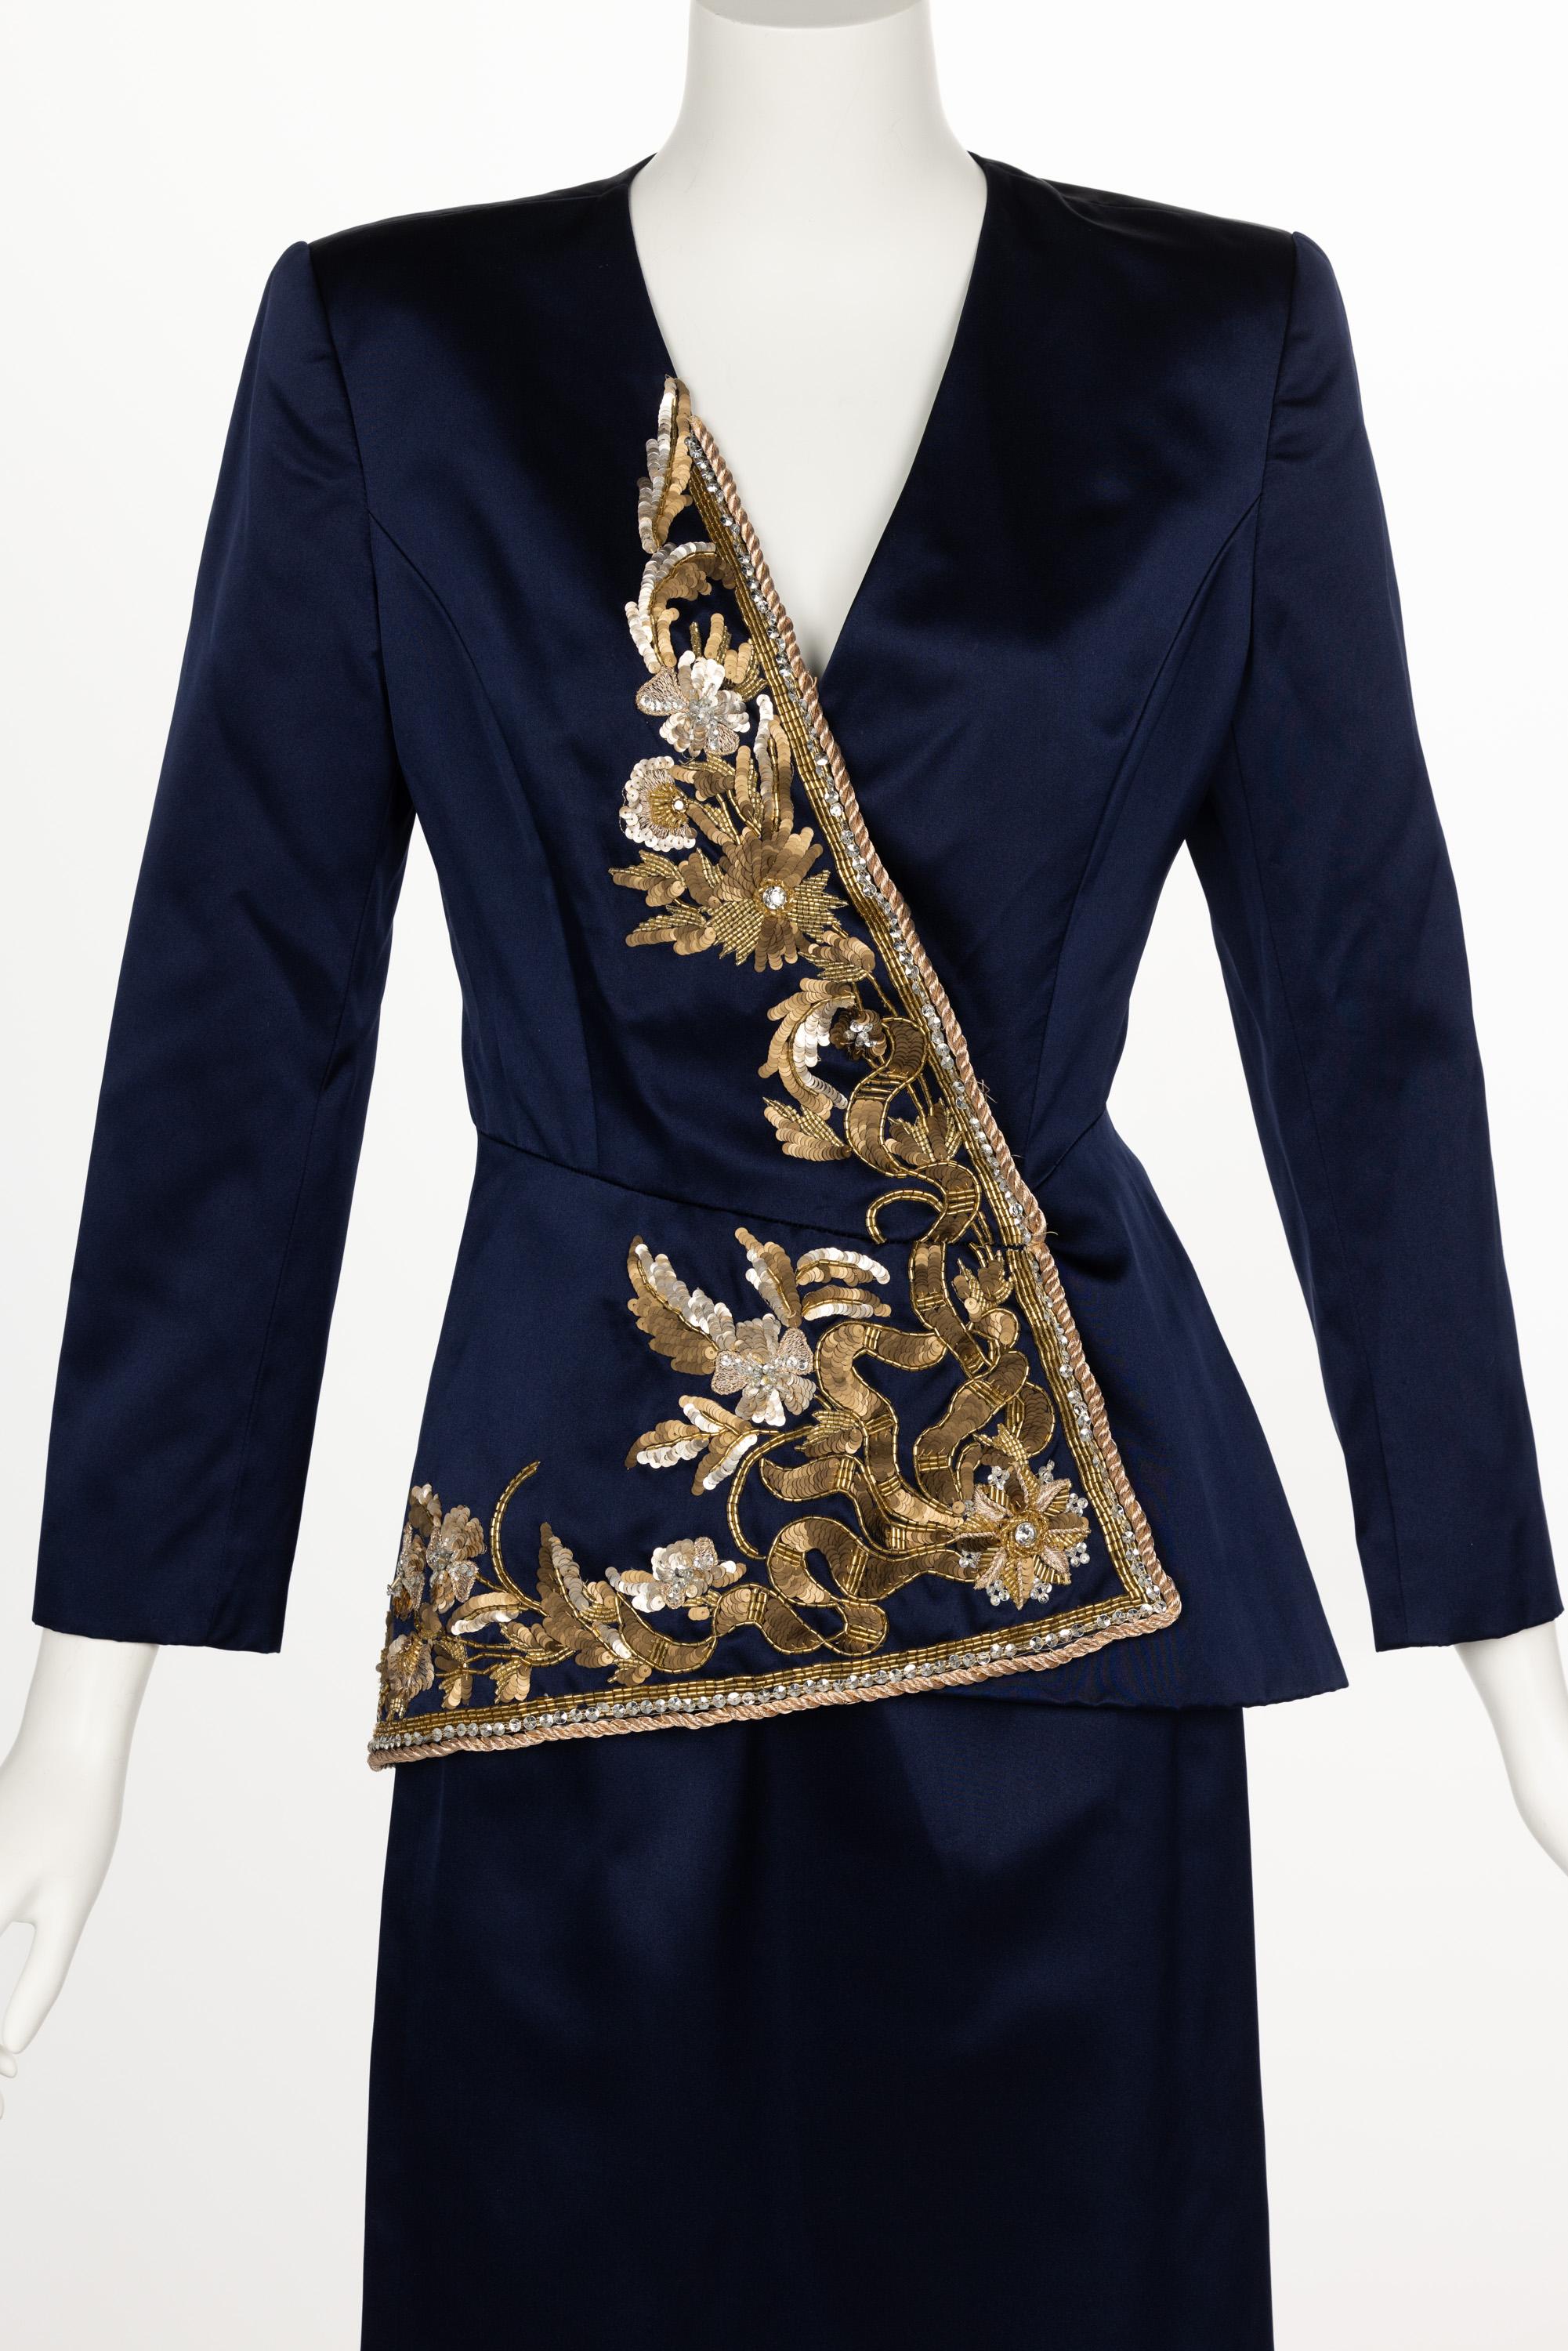 Vintage Oscar de la Renta Navy Satin Gold Embellished Skirt Suit F/W 1992 For Sale 2